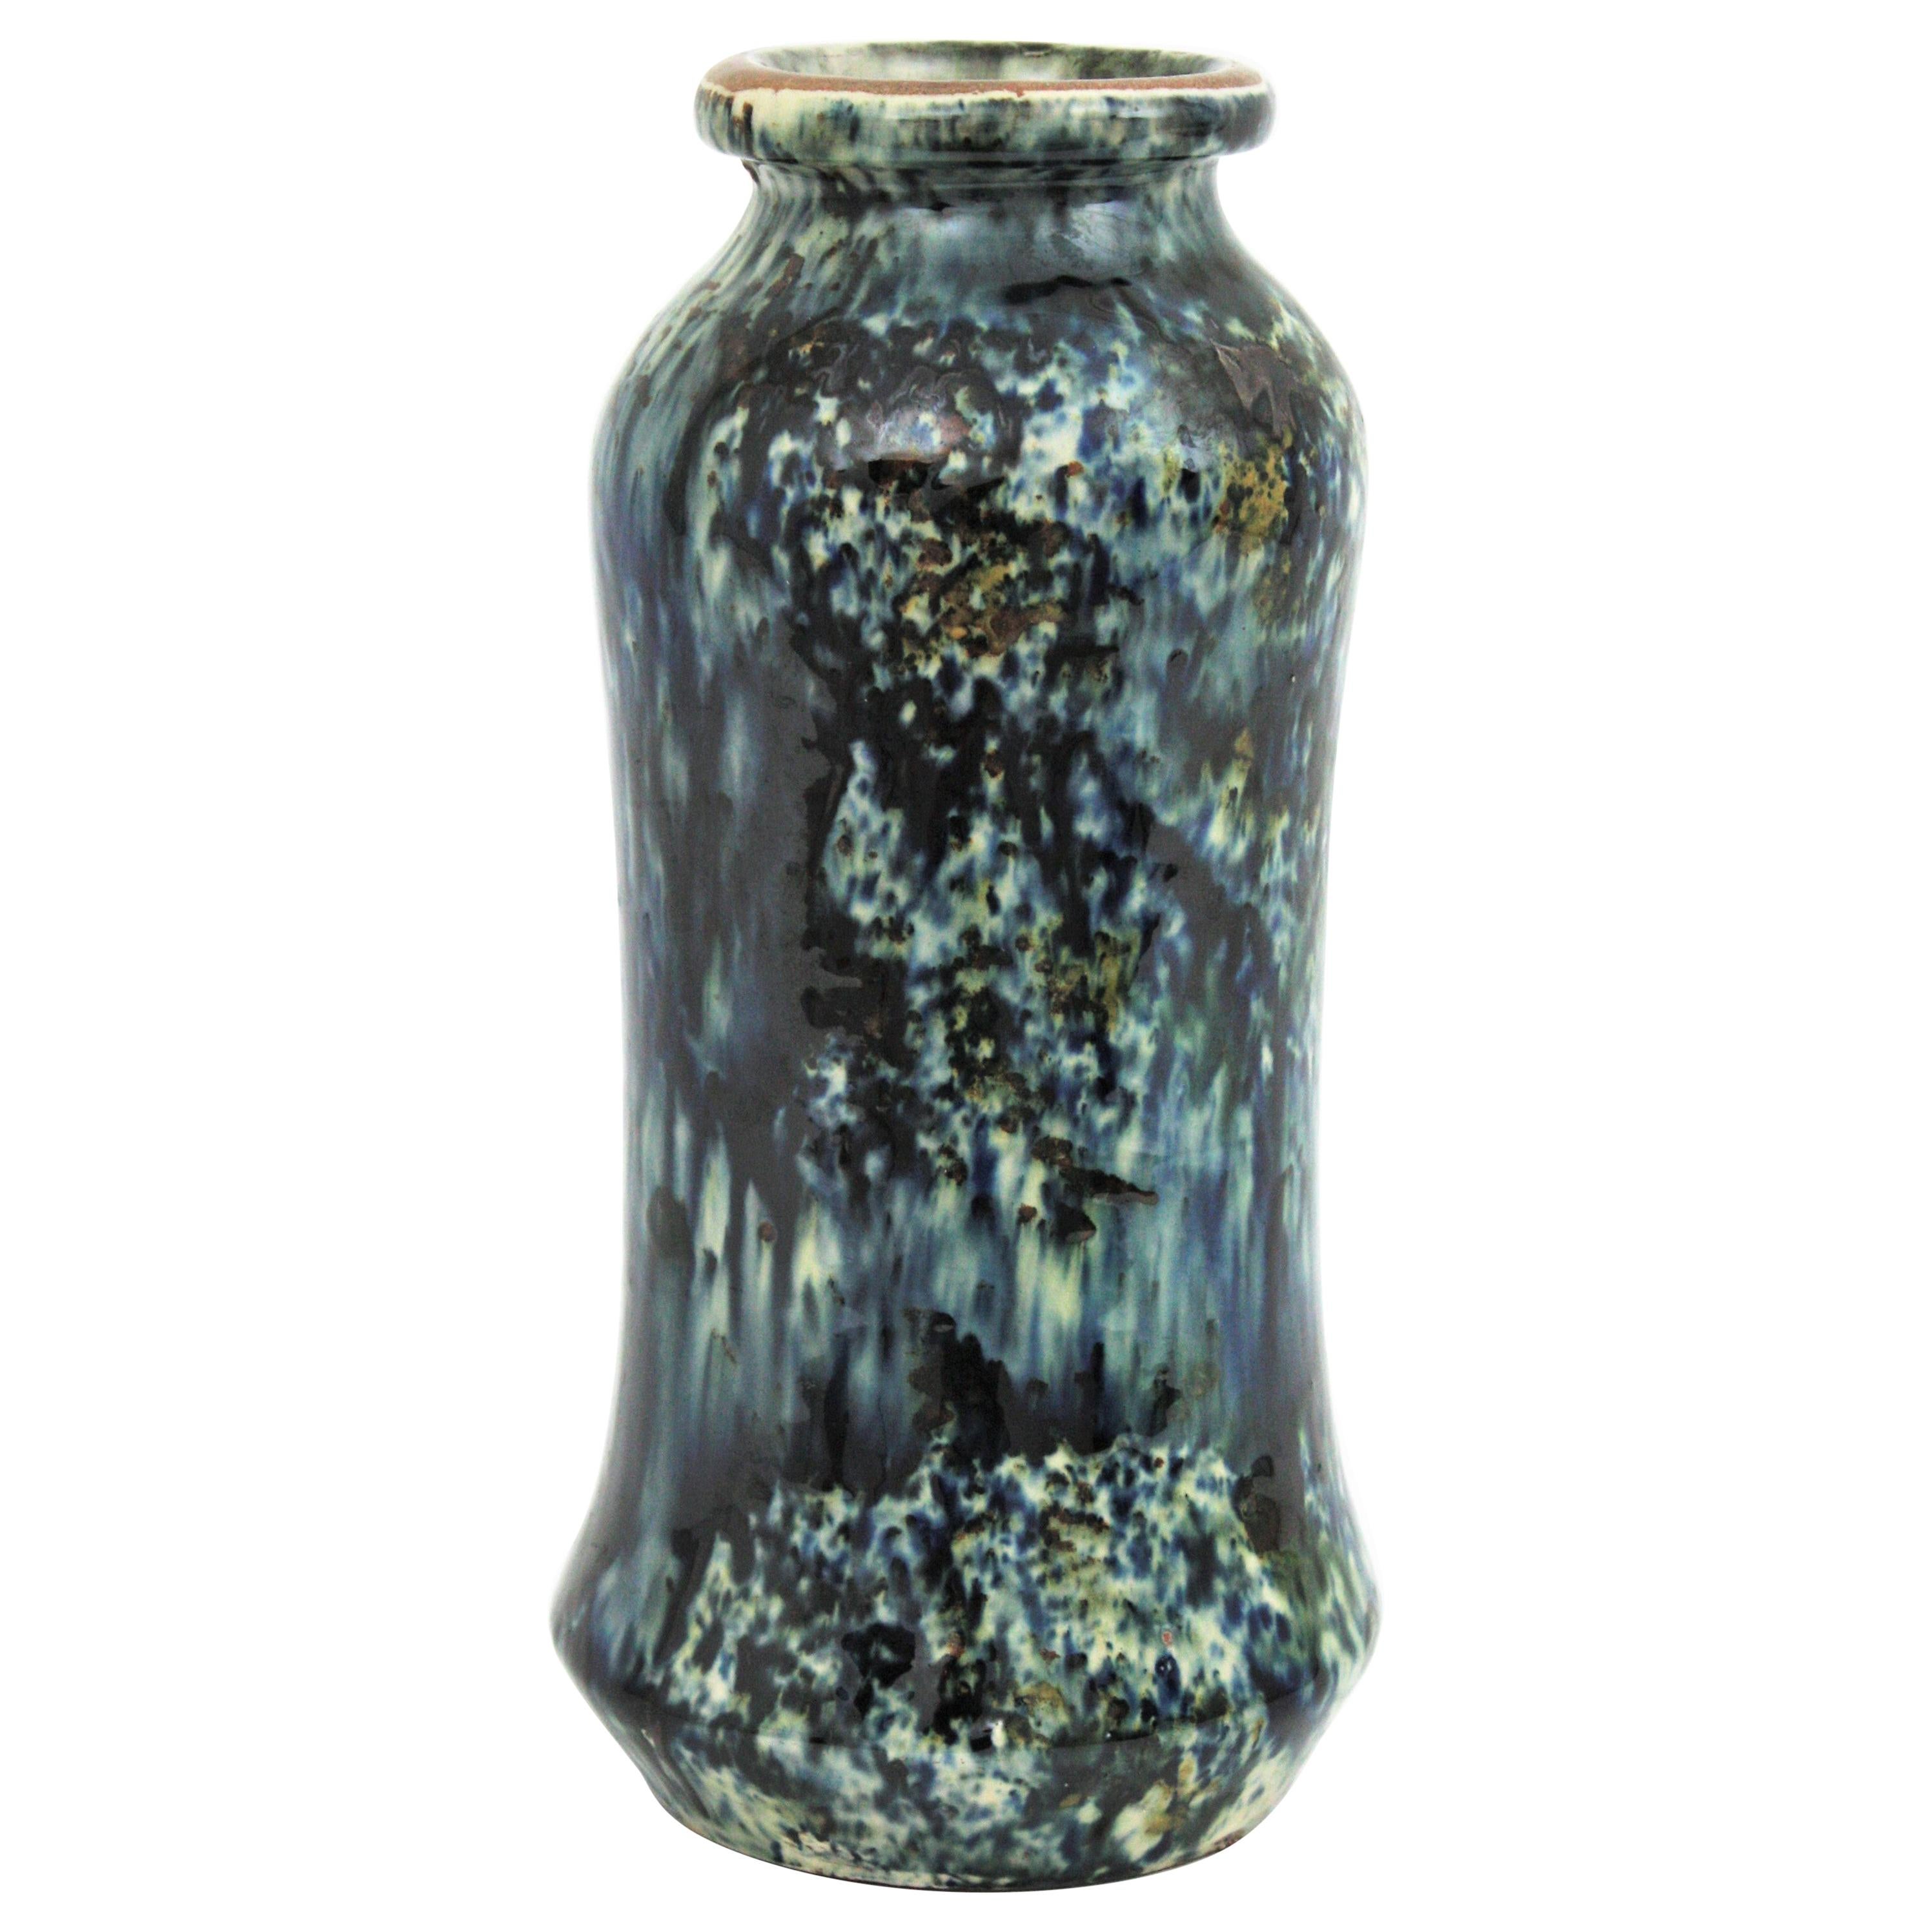 Vase tacheté en terre cuite émaillée, Espagne, vers les années 1960.
Bleu marine, blanc, noir.
Il porte une marque sur le fond (IOX).
Magnifique pour être utilisé comme vase à fleurs ou pour être exposé dans le cadre d'une collection de